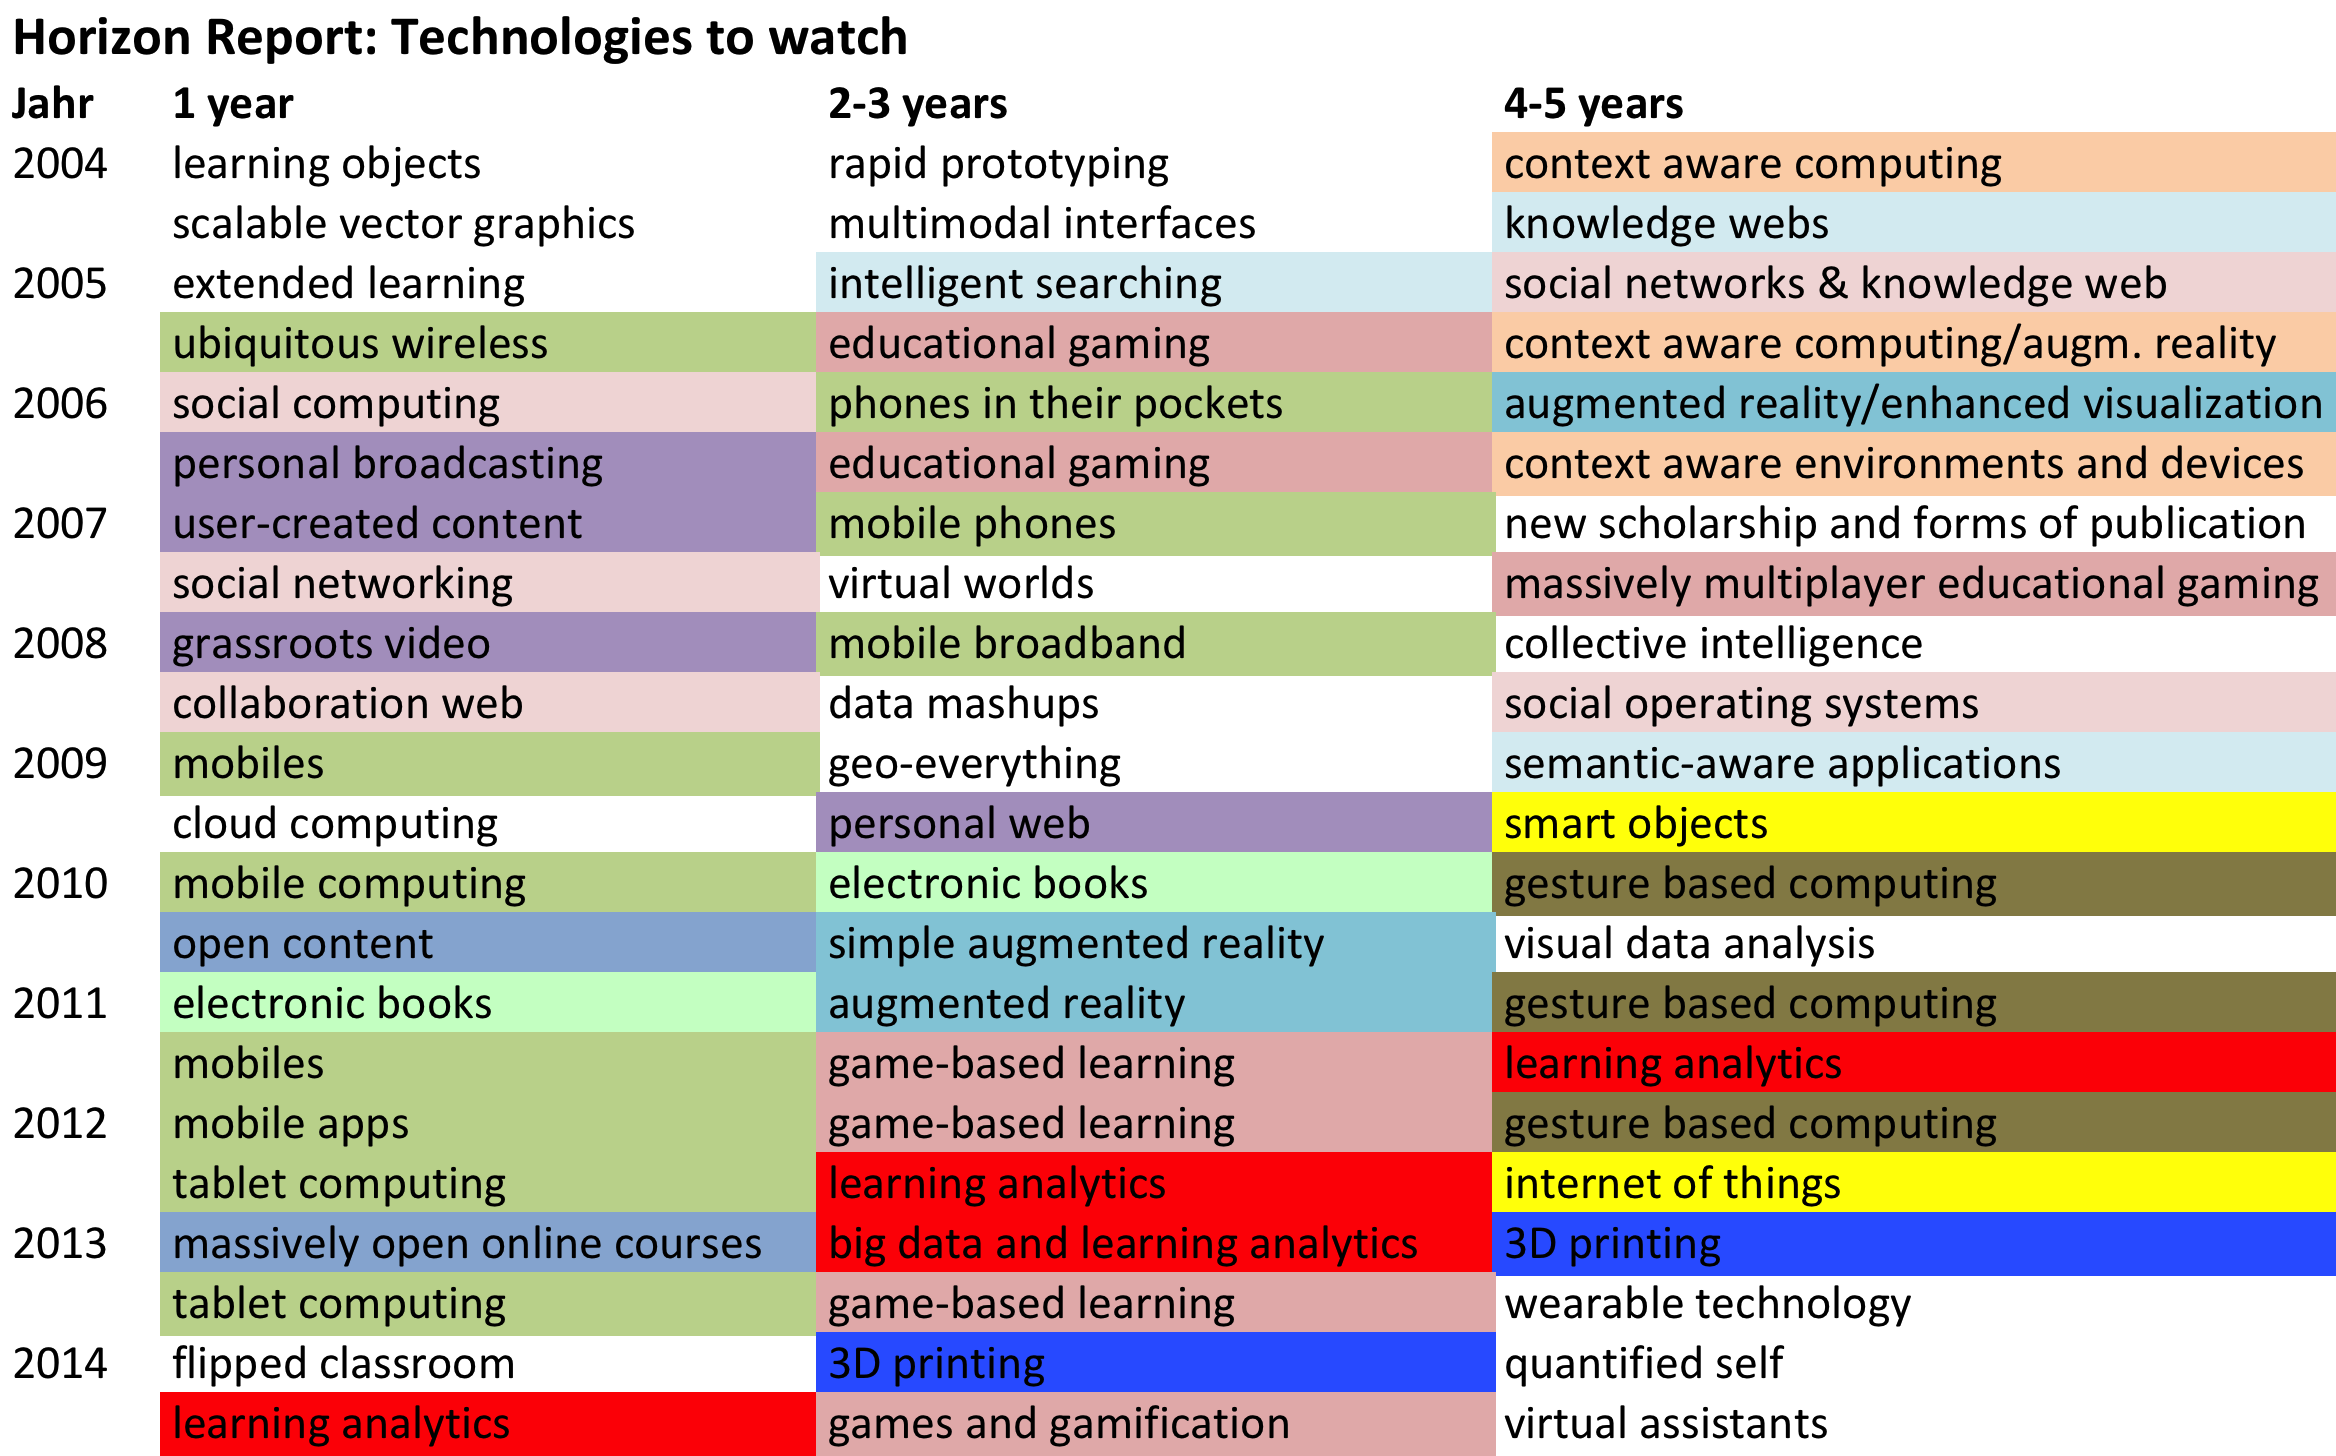 Wichtigste Technologien seit 2004, Themen farblich zu Clustern zusammengefasst (eigene Darstellung)